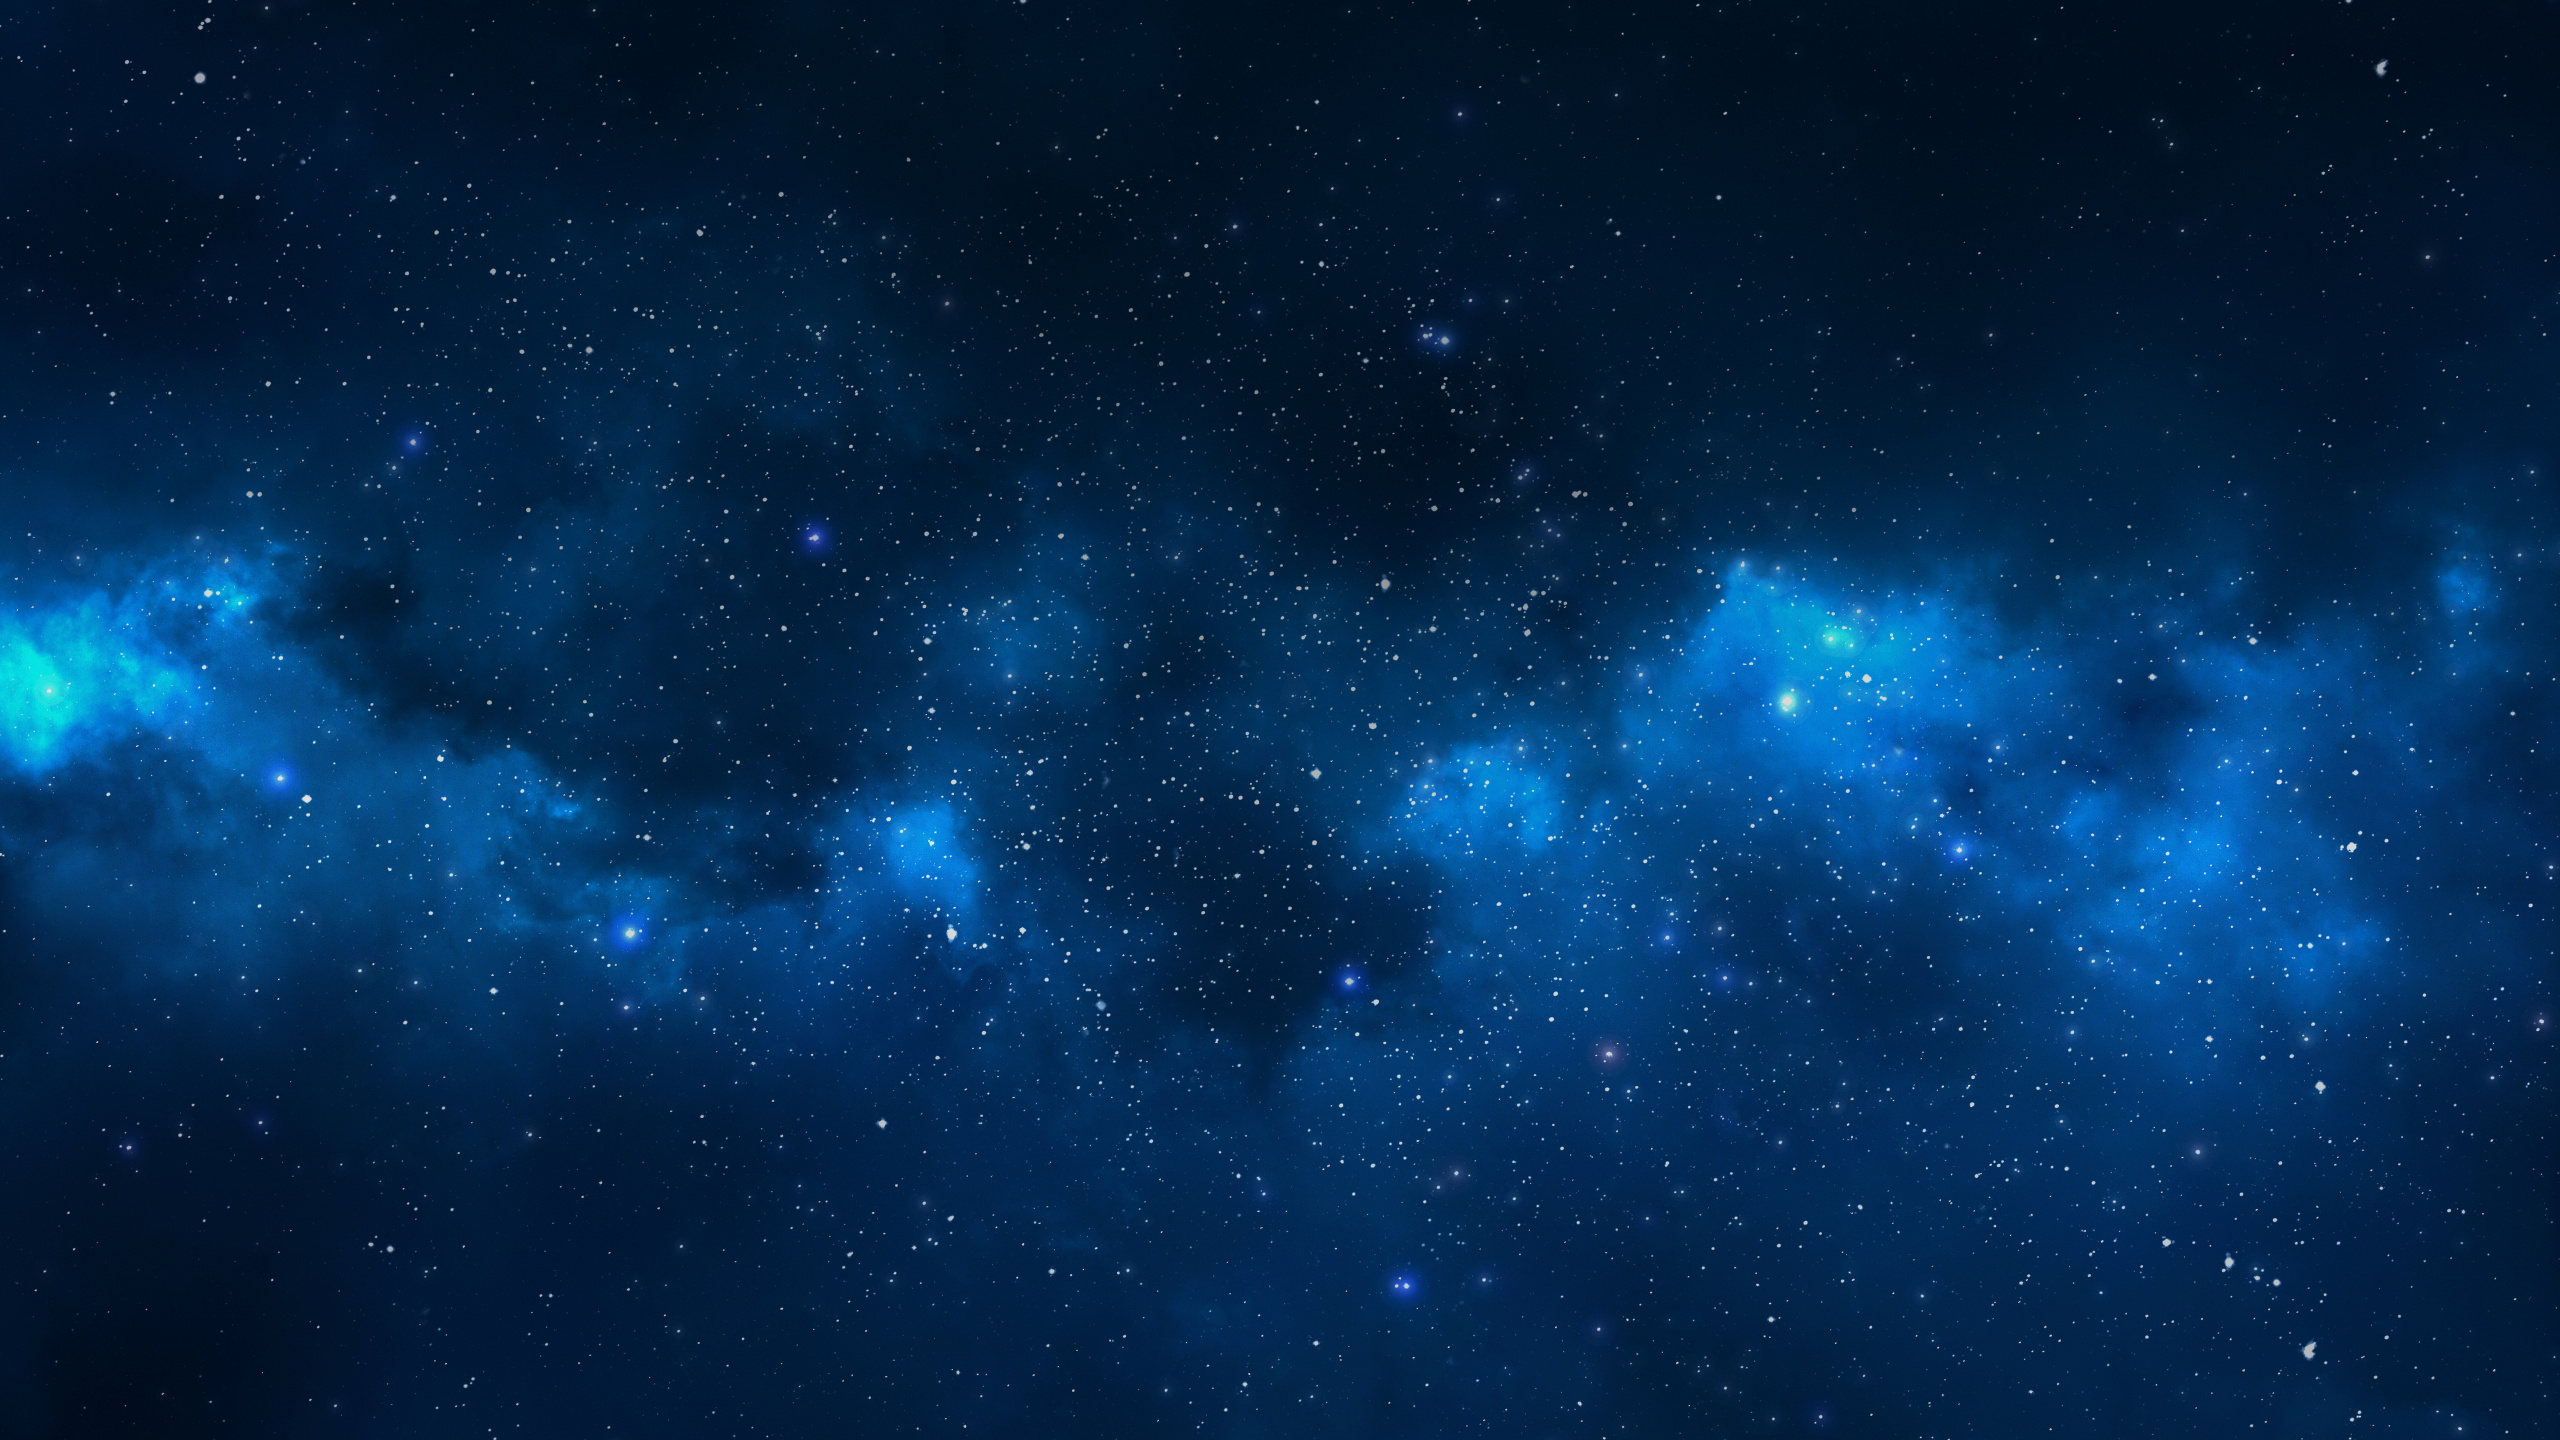 天文学对象, 外层空间, 空间, 夜晚的天空, 明星 壁纸 2560x1440 允许